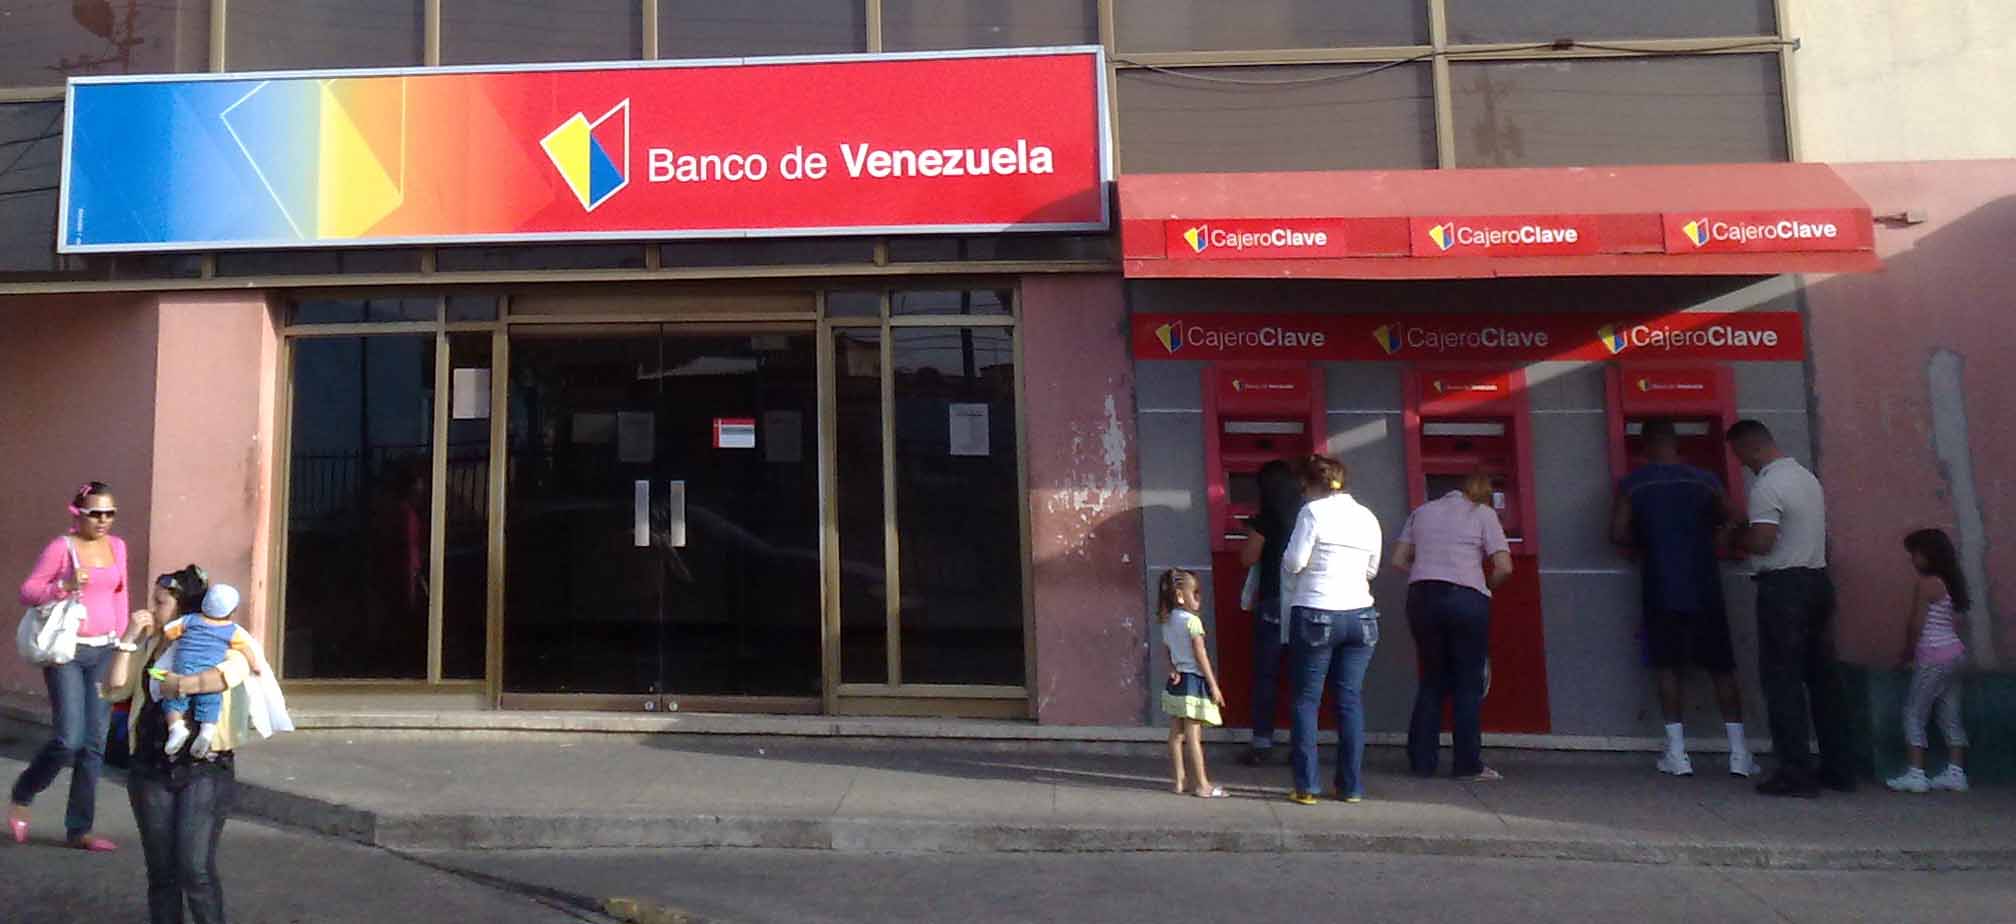 Solicitar Cita en el Banco de Venezuela